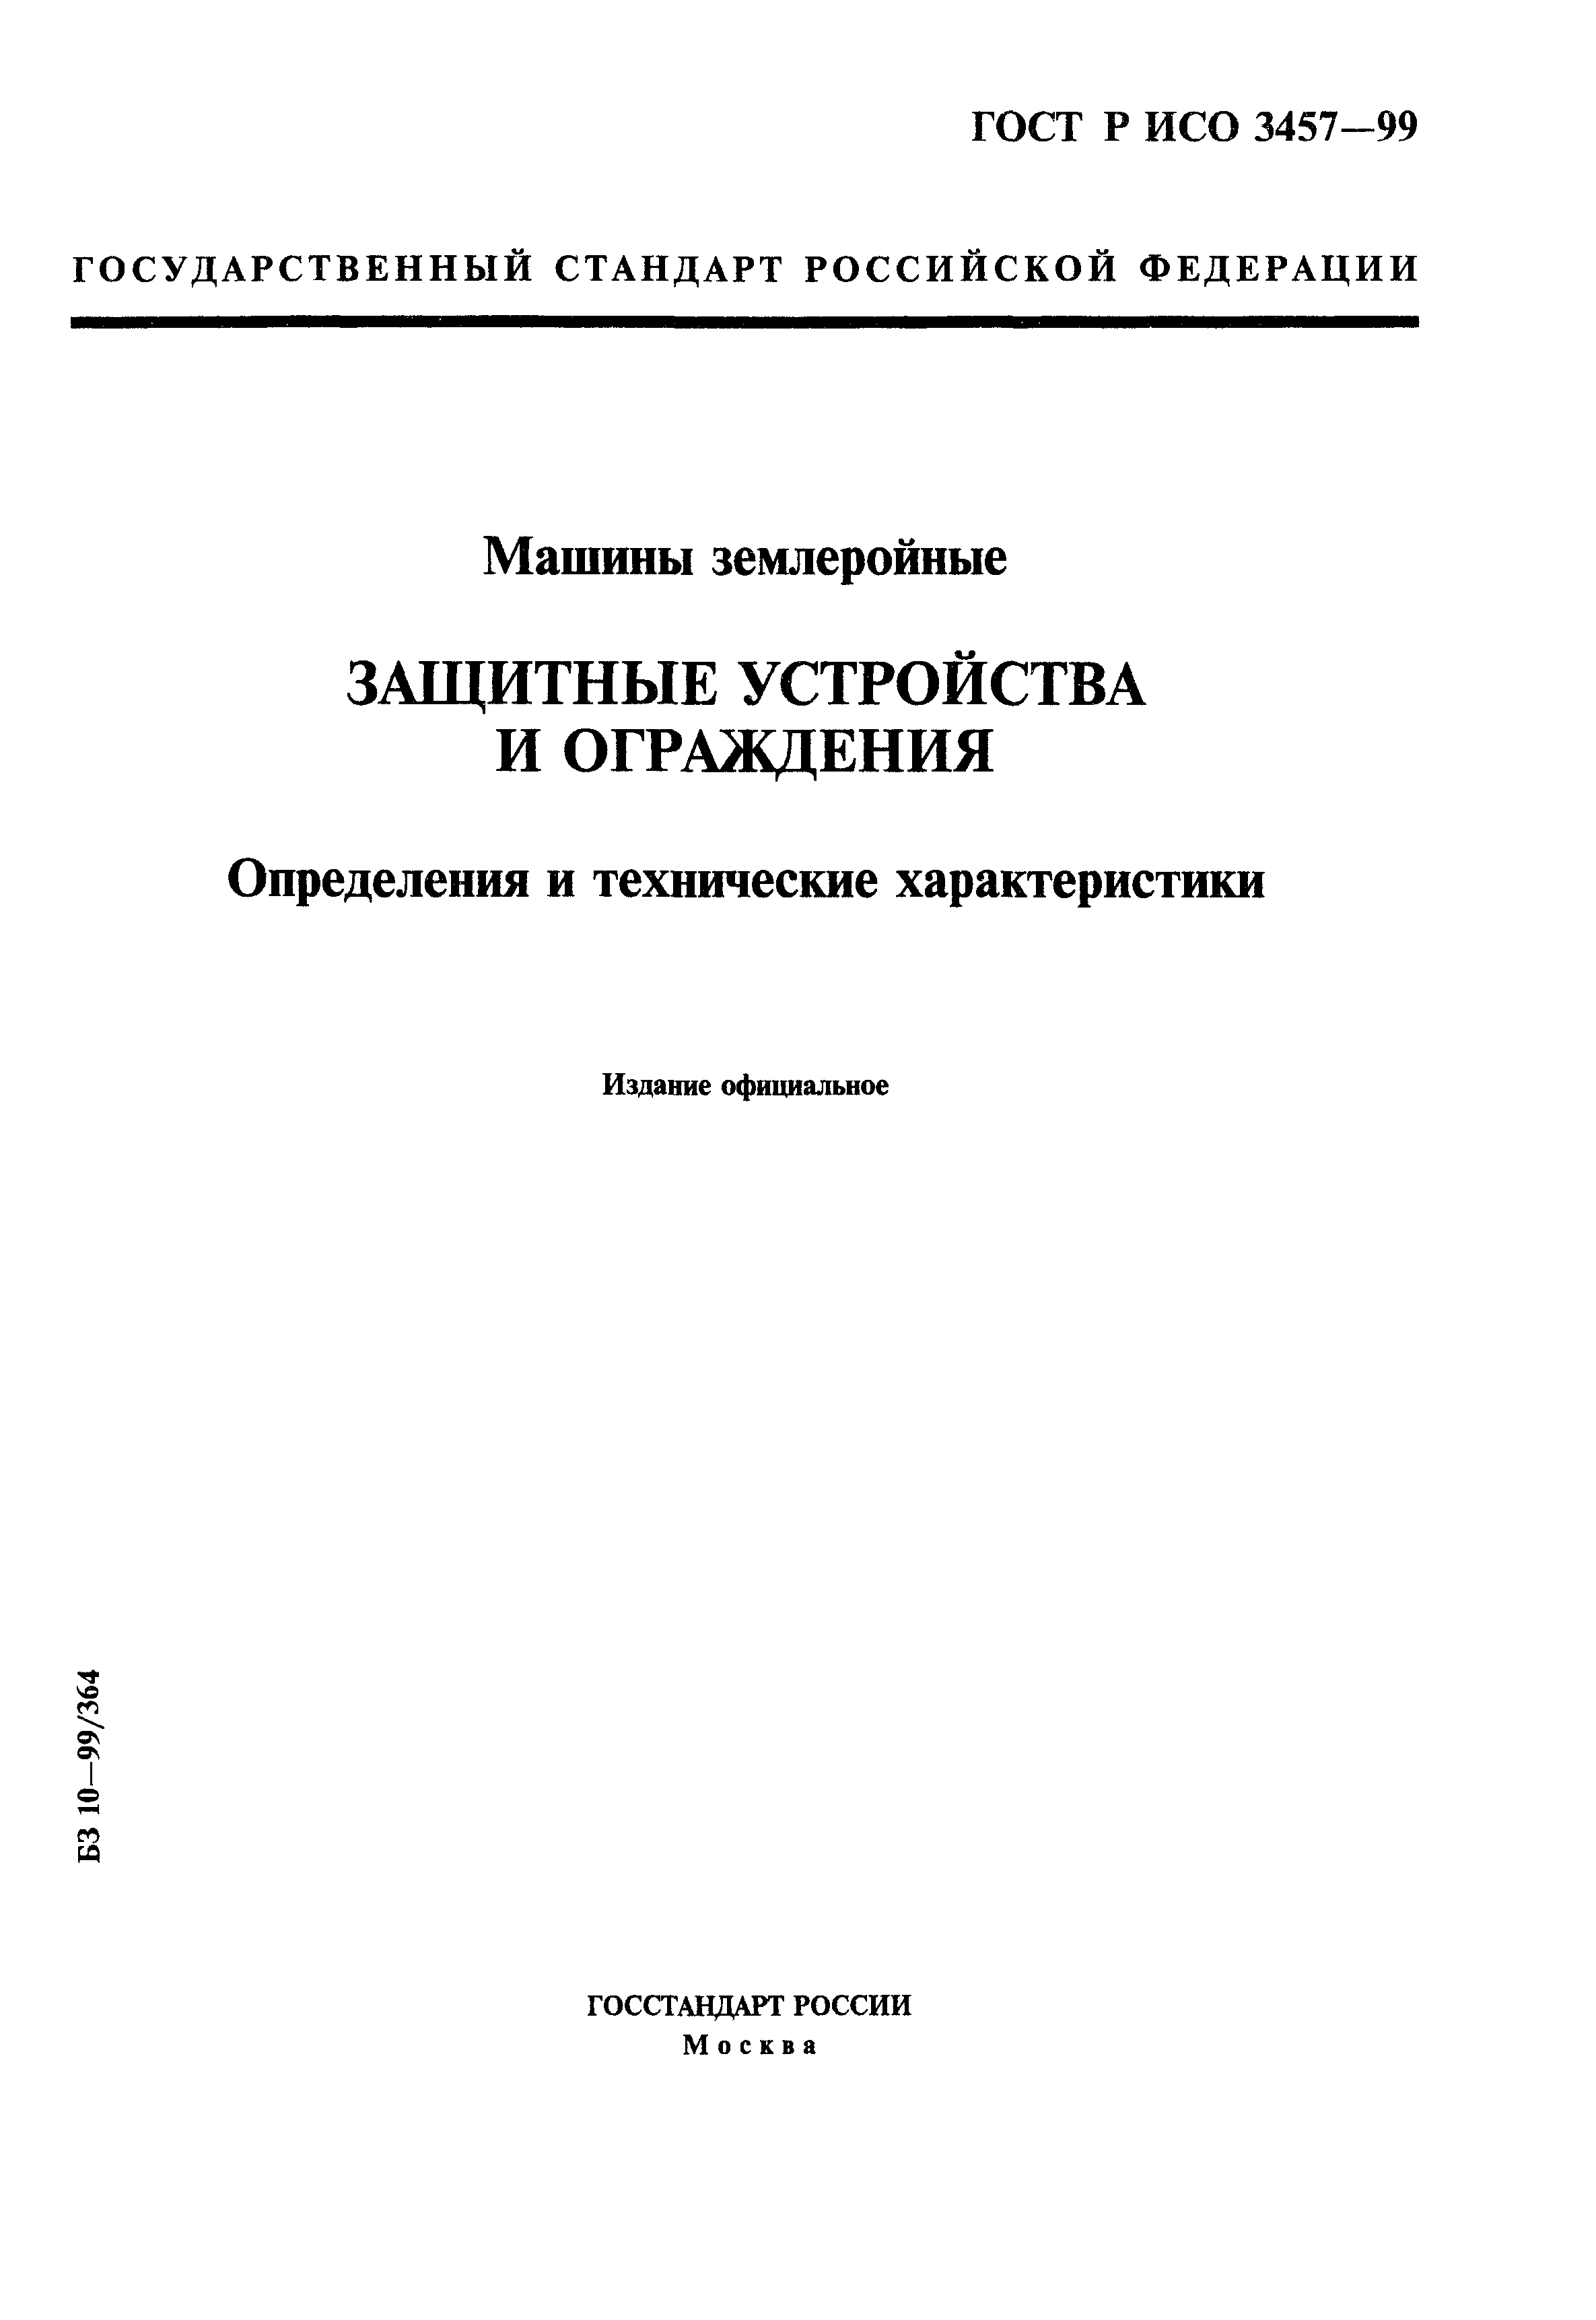 ГОСТ Р ИСО 3457-99